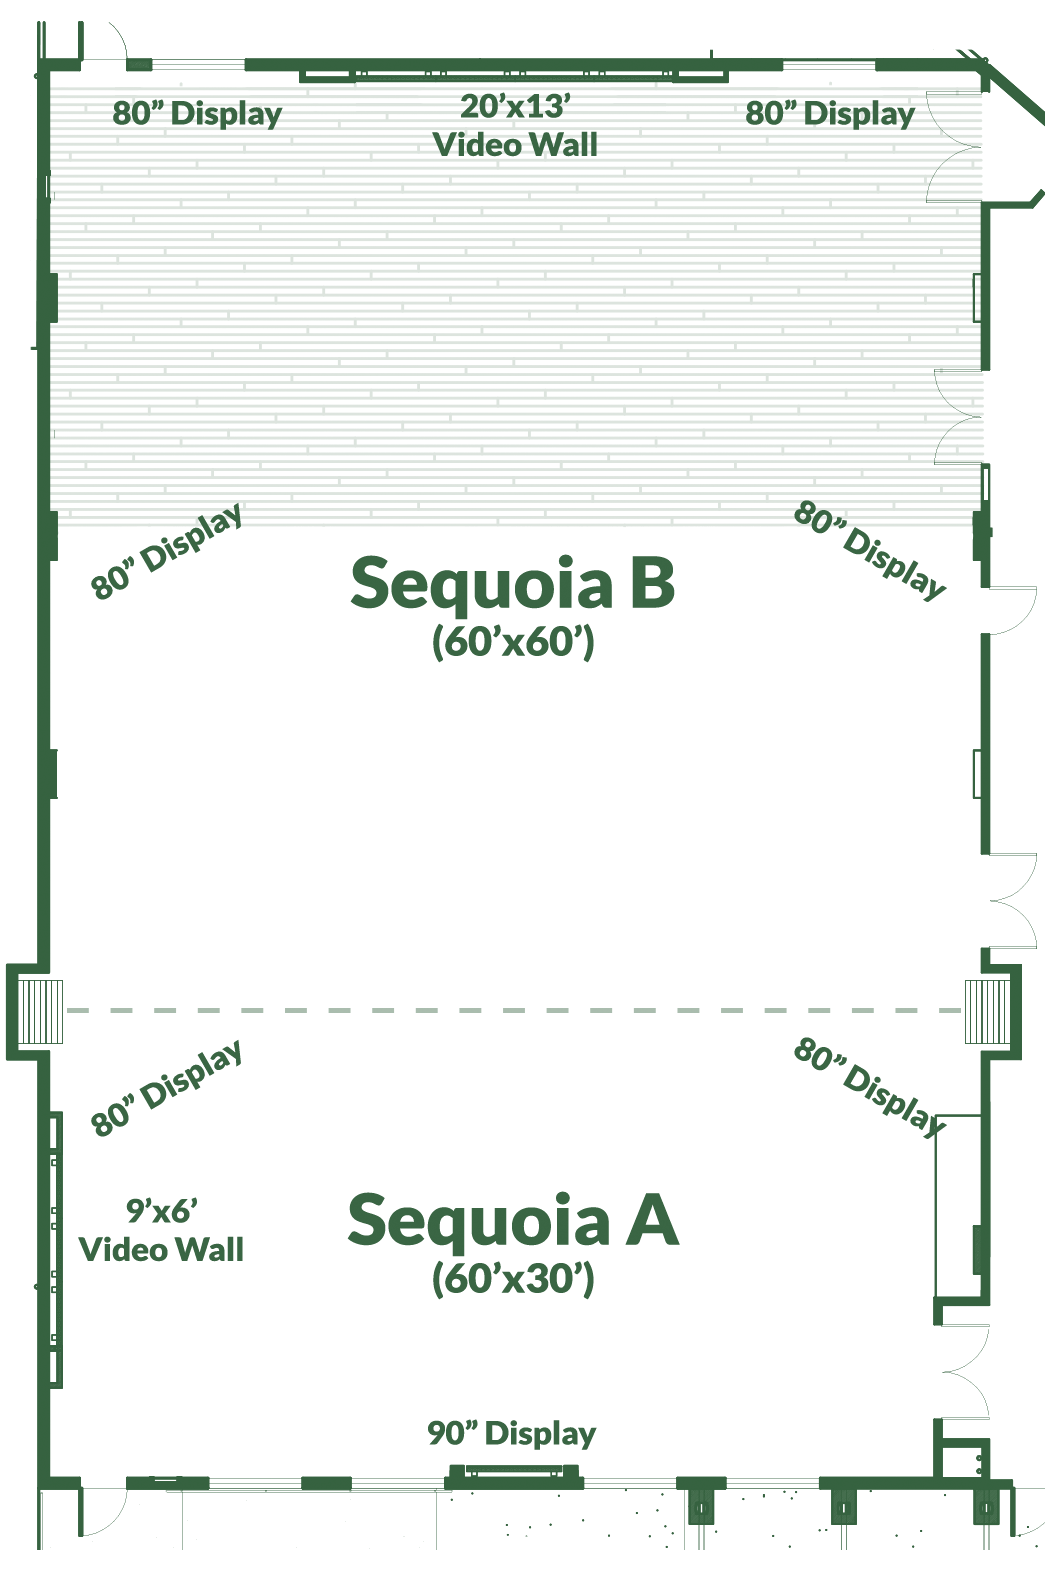 Floor Plan of Sequoia Center